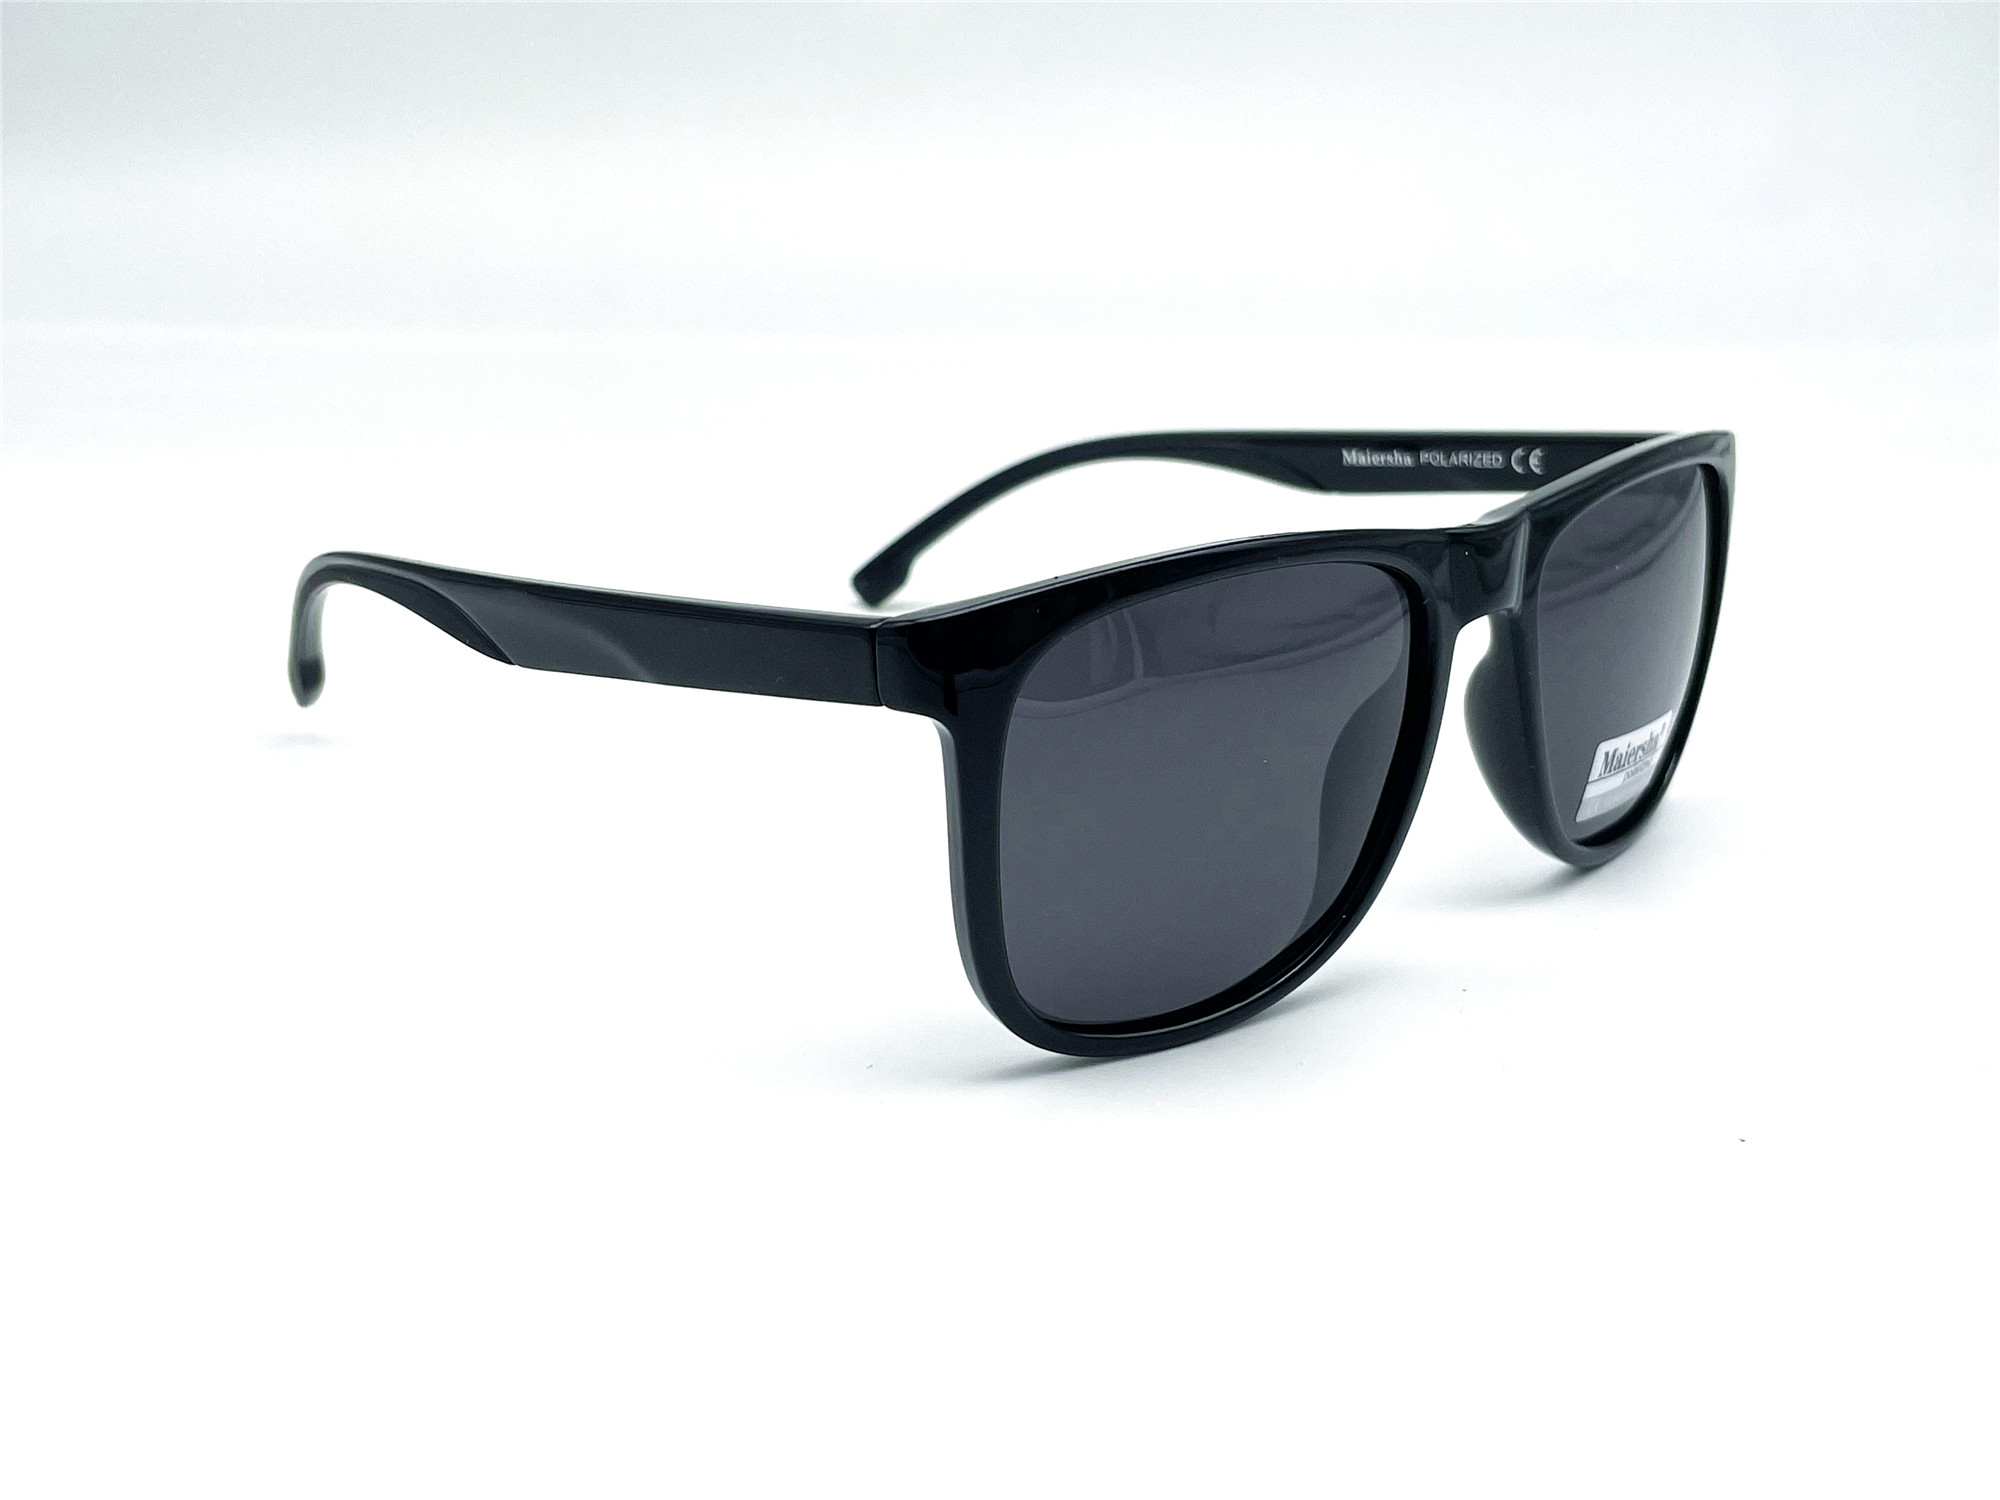  Солнцезащитные очки картинка Мужские Maiersha Polarized Стандартные P5056-C1 